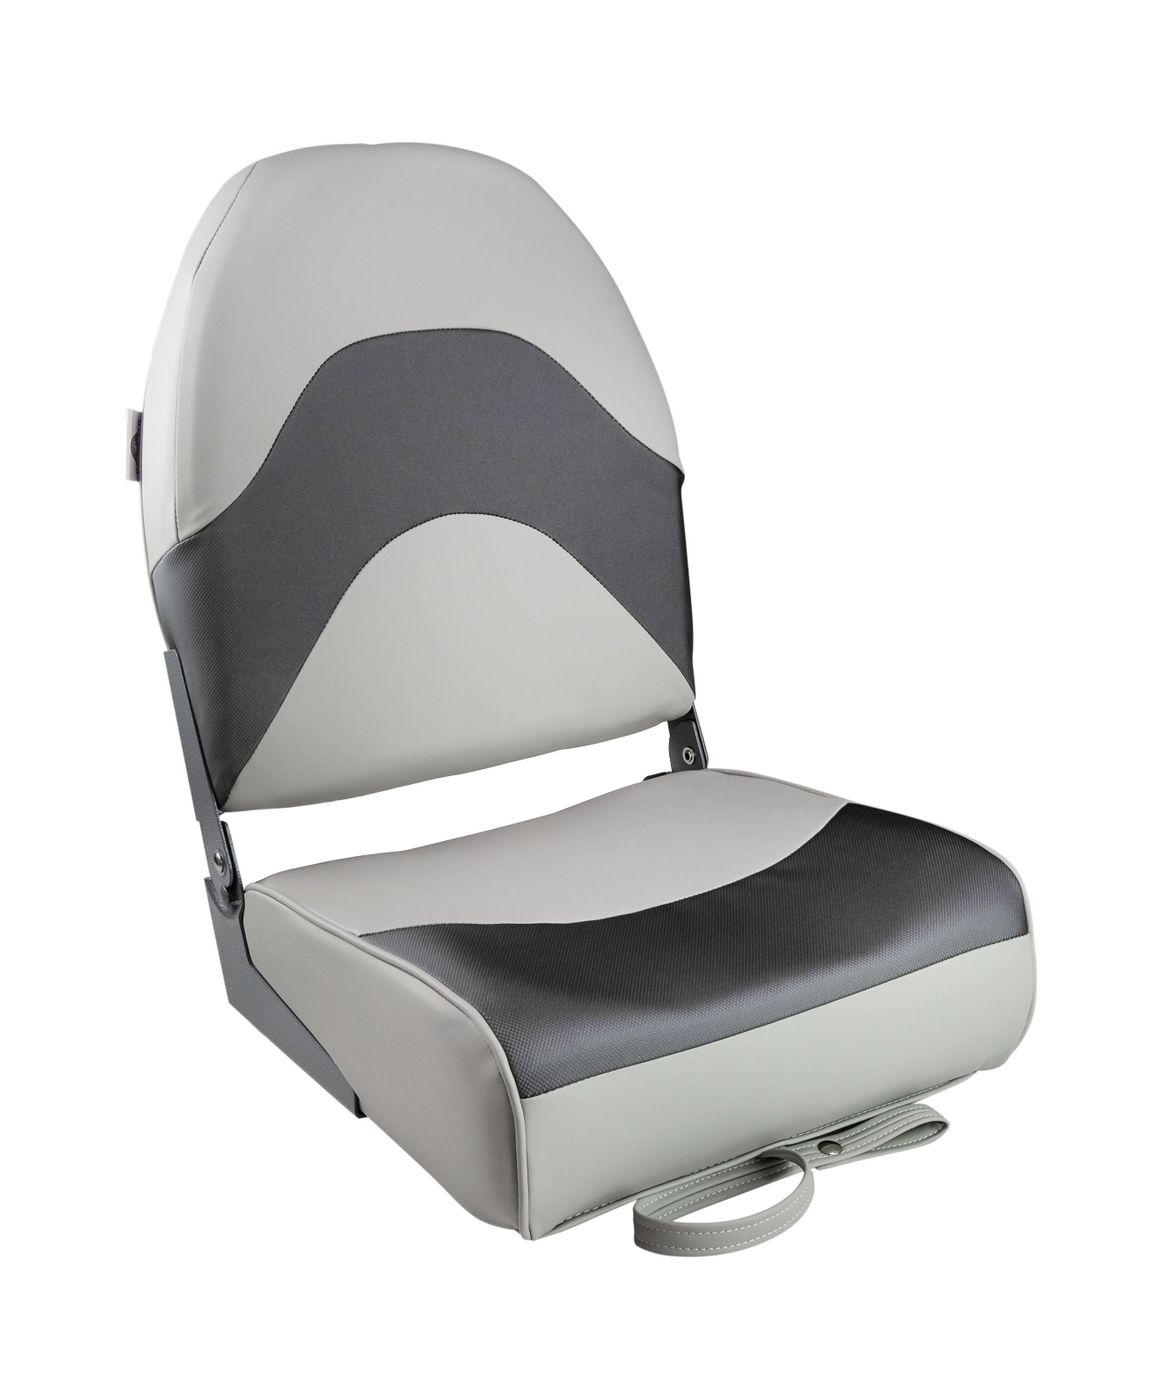 Кресло складное мягкое PREMIUM WAVE, цвет серый/черный 1062034 кресло ozark мягкое черный темно серый упаковка из 2 шт 1043224 pkg 2